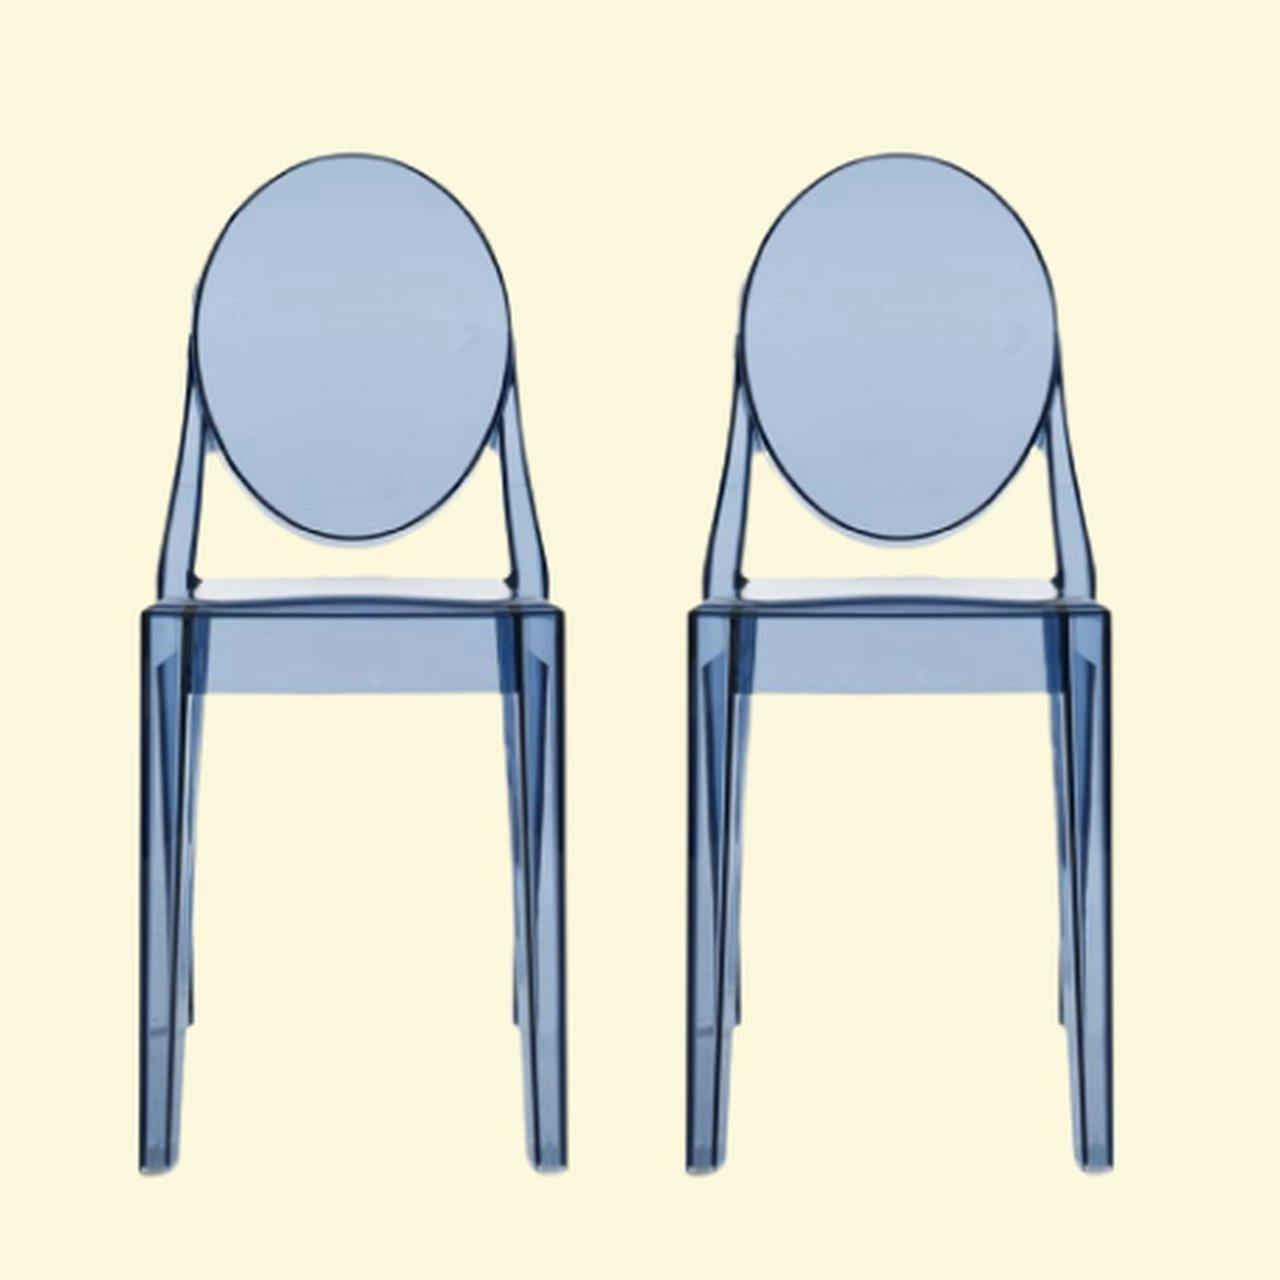 Zanotta Dining chairs